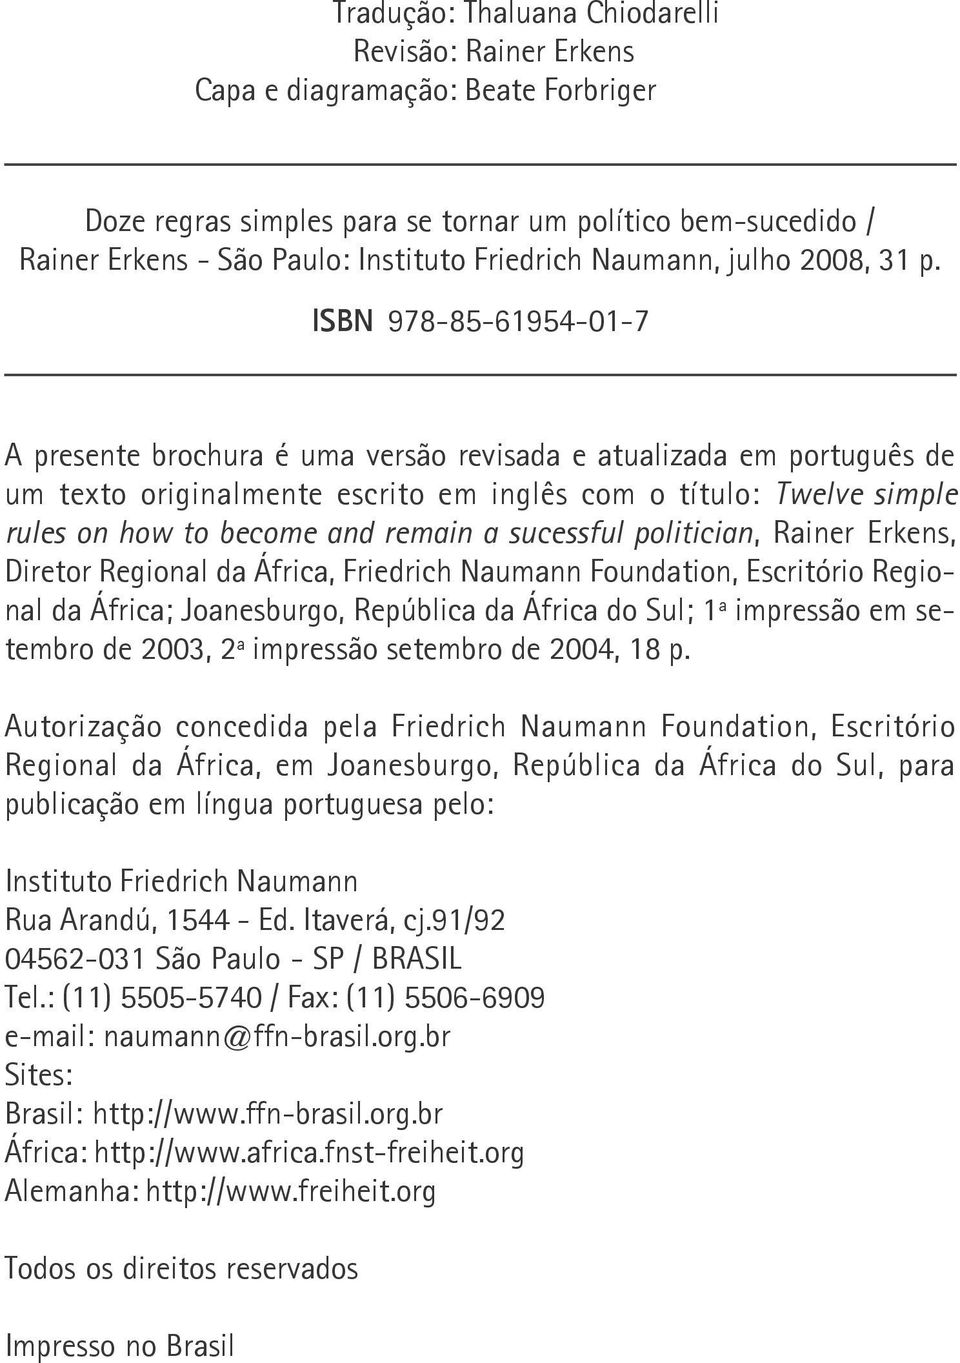 ISBN 978-85-61954-01-7 A presente brochura é uma versão revisada e atualizada em português de um texto originalmente escrito em inglês com o título: Twelve simple rules on how to become and remain a